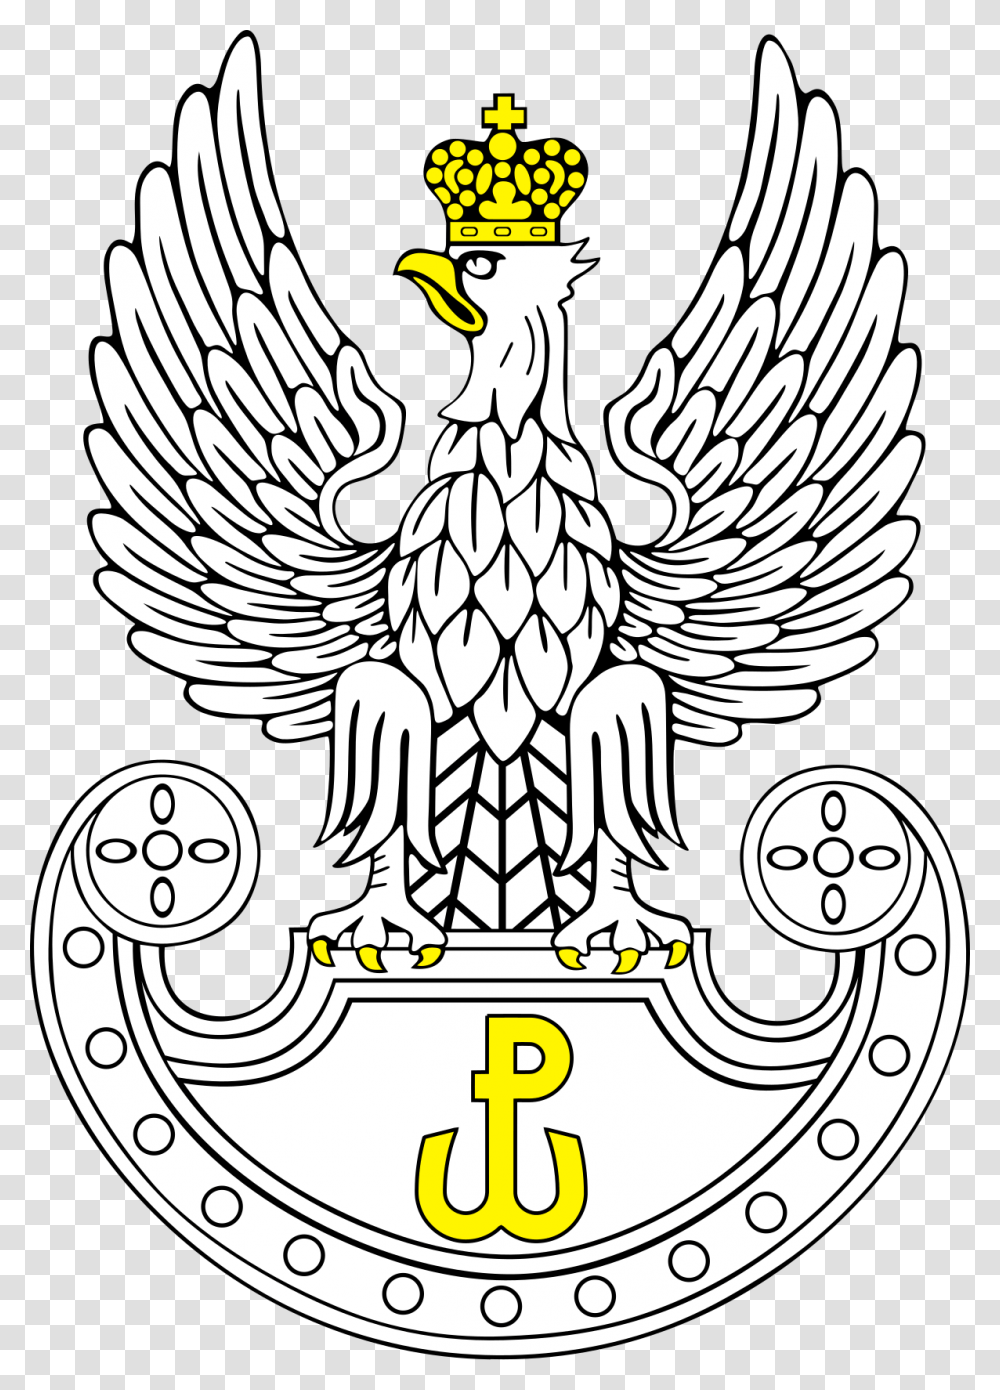 Polish Land Forces, Emblem, Logo, Trademark Transparent Png